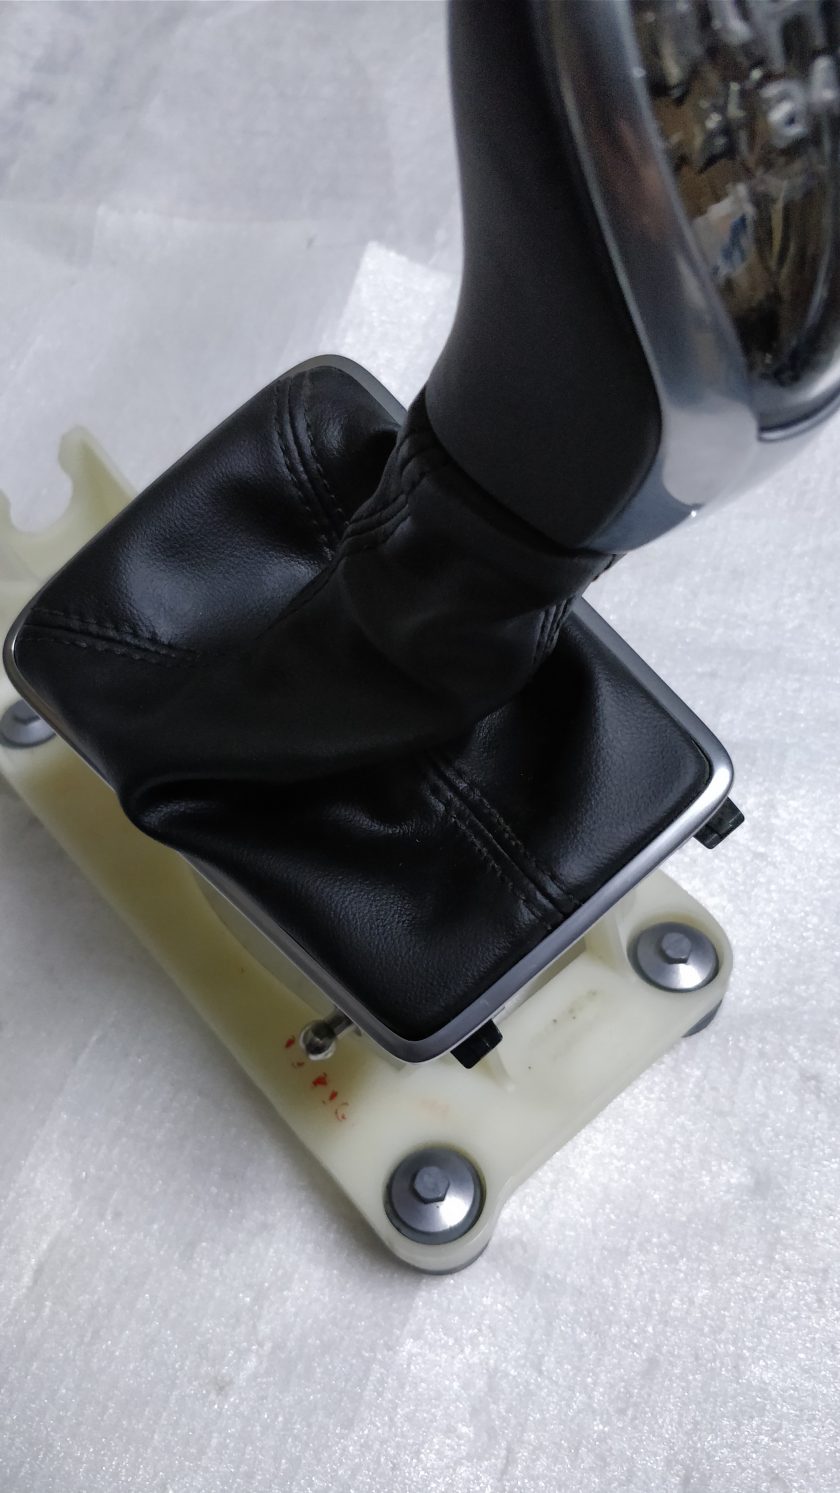 Gear lever knob V40 XC40 Manual 12-16 31367363 1000249748 illuminated